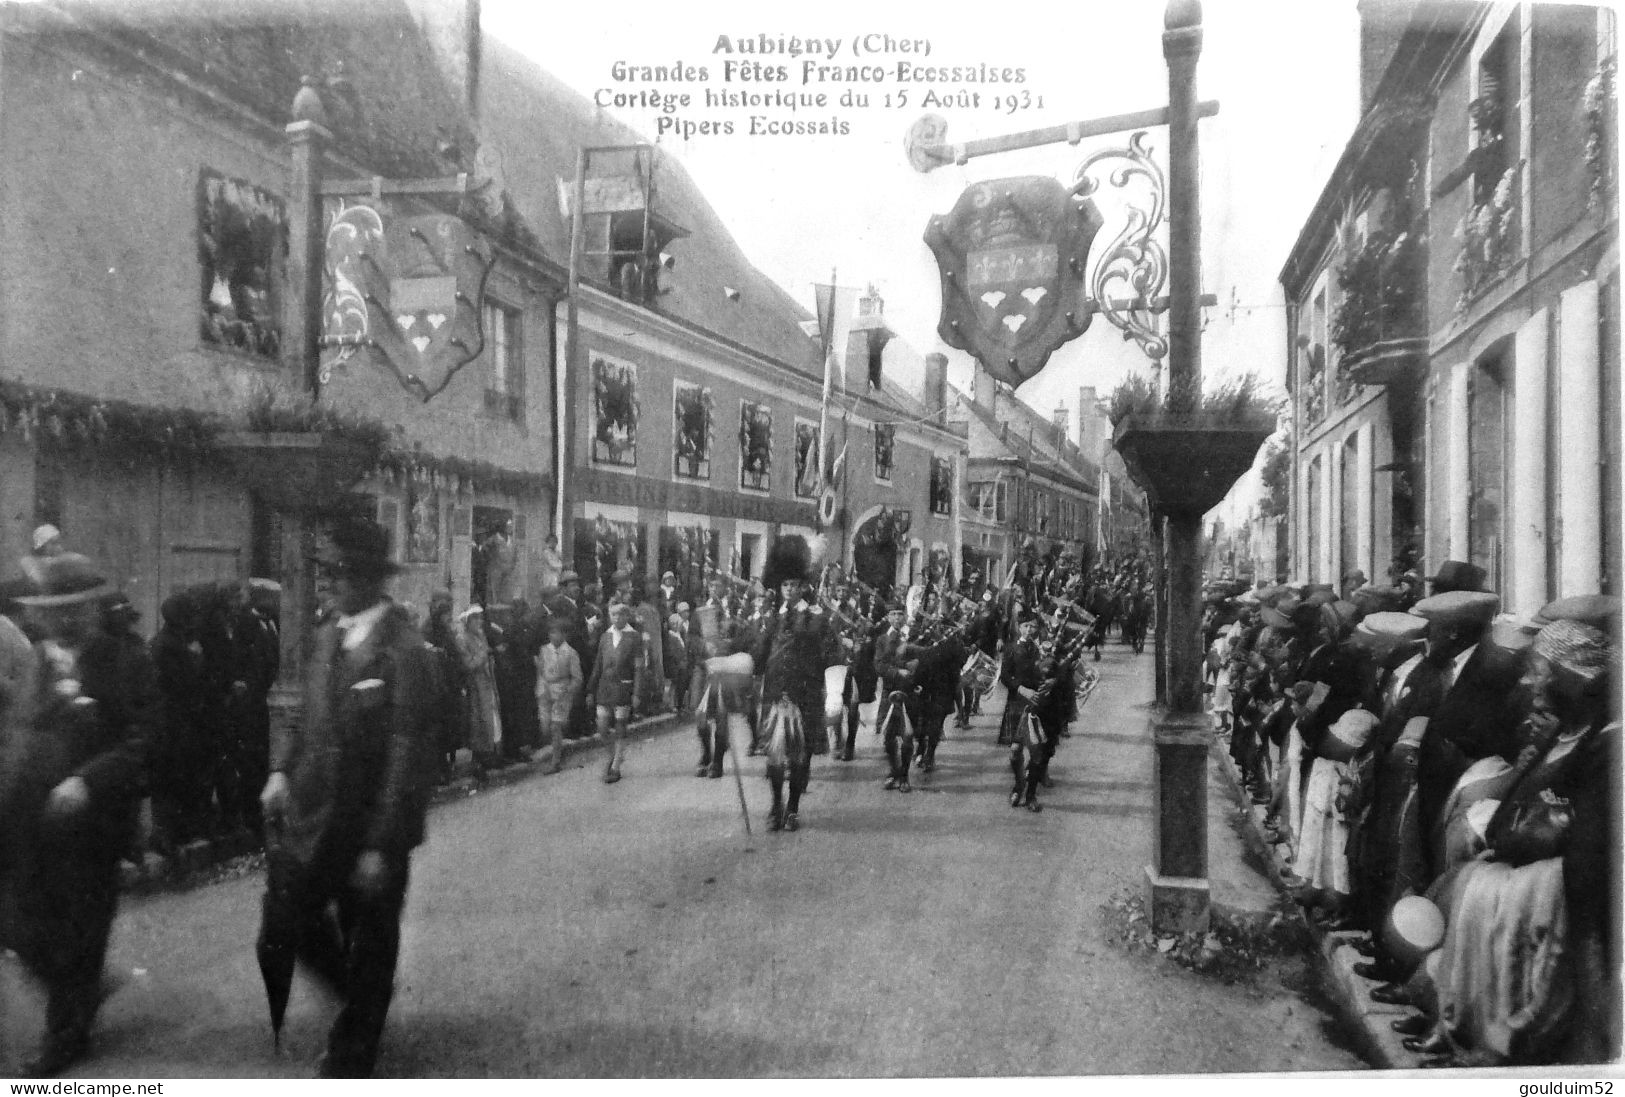 Grandes Fetes Franco Ecossaises Cortège Historique Du 15 Aout 1931 - Aubigny Sur Nere